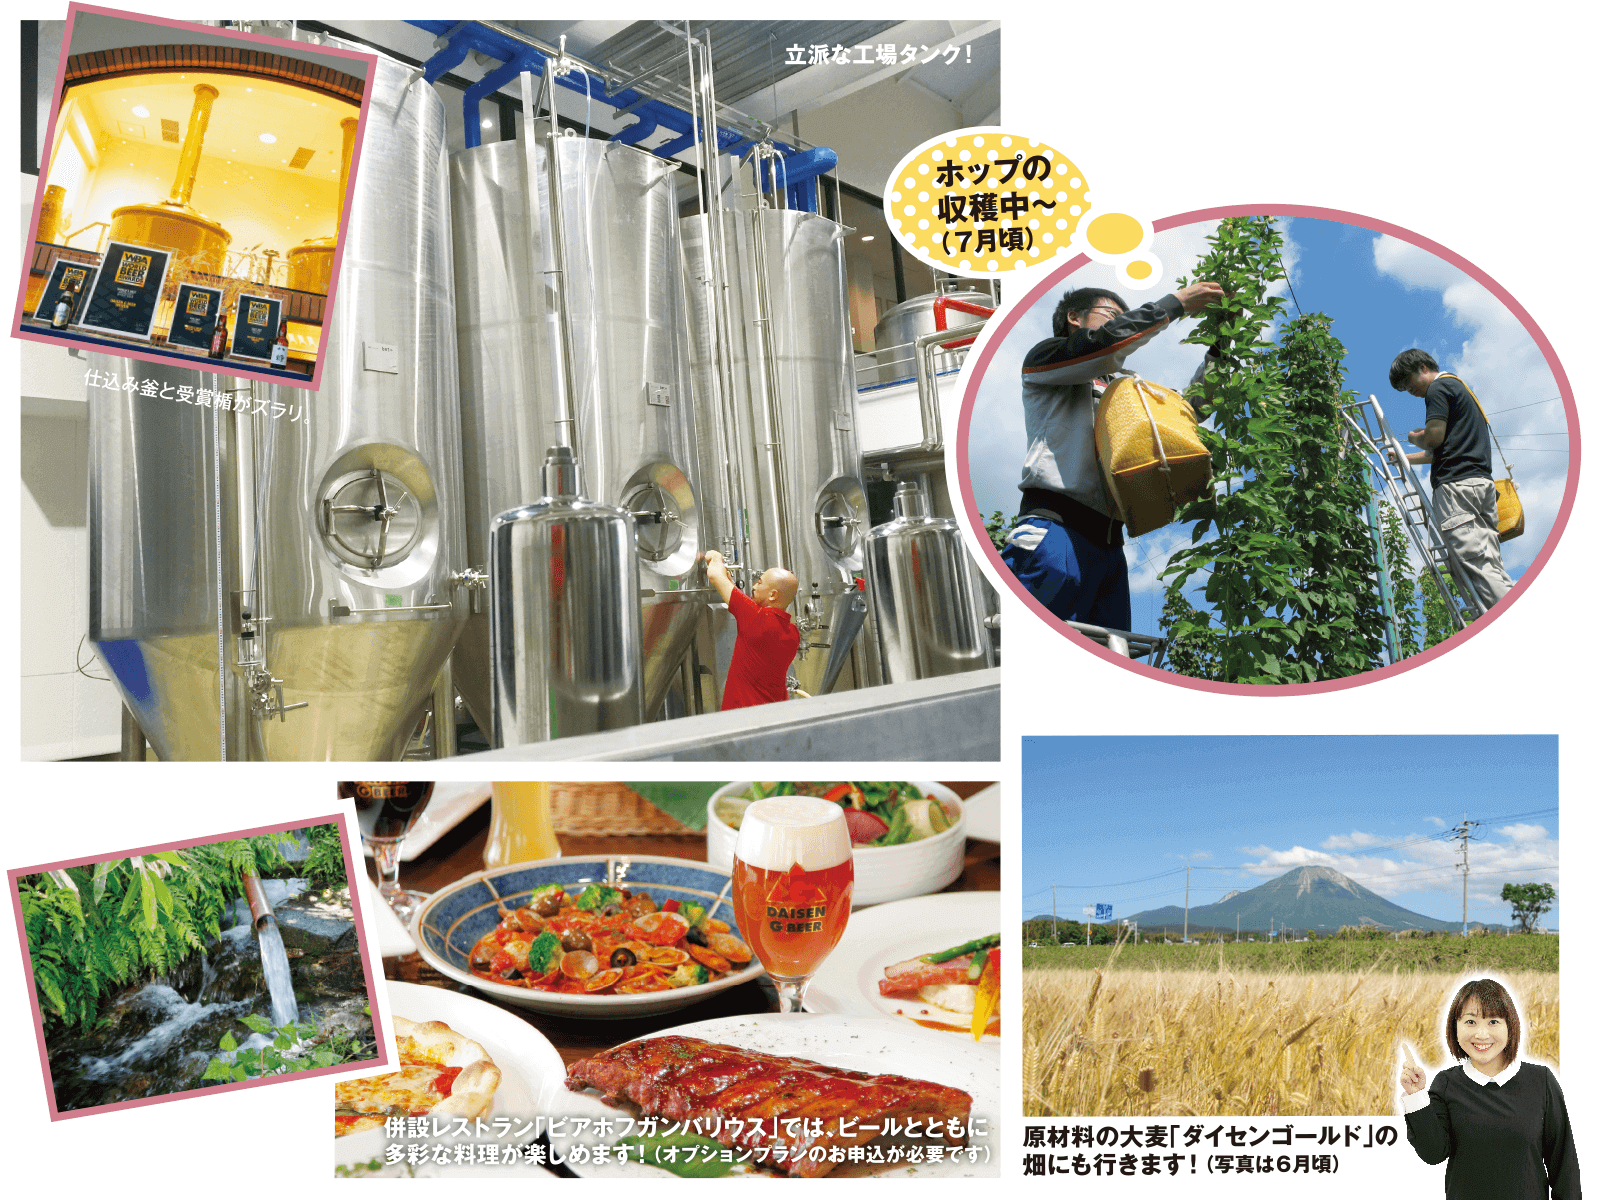 久米桜麦酒株式会社 ｢大山Gビール｣ブルワリー